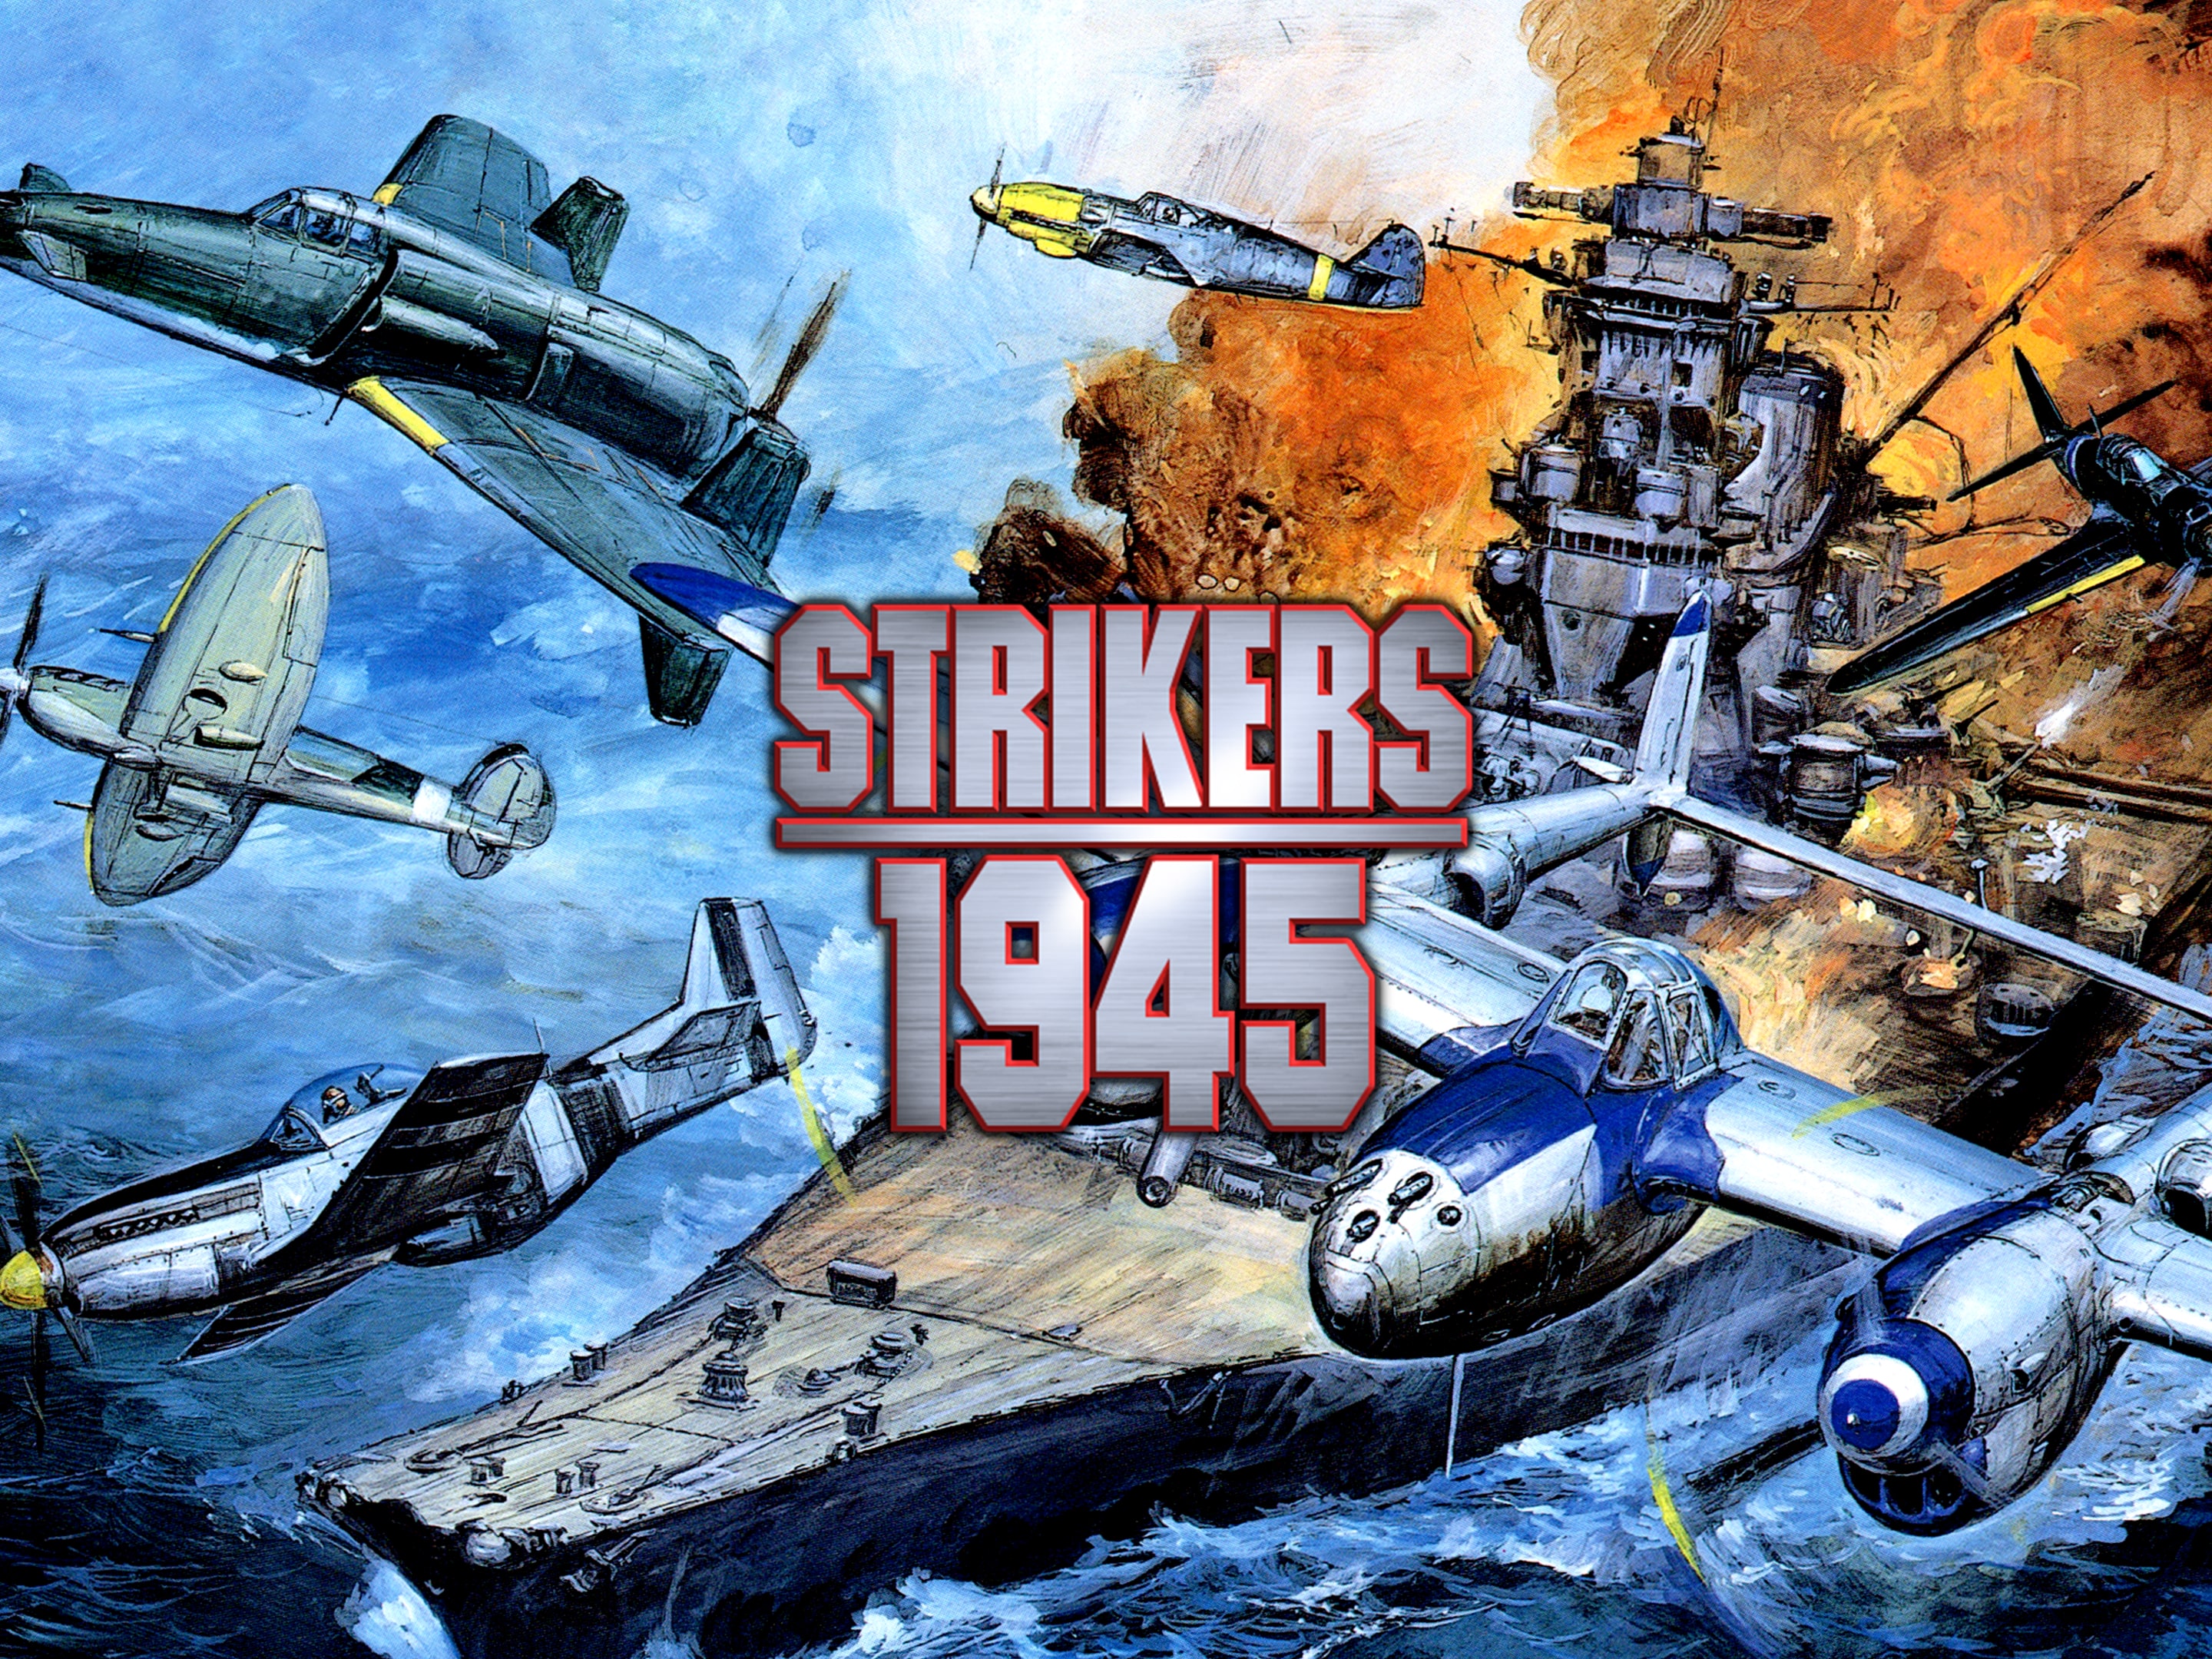 STRIKERS 1945 FLASH jogo online gratuito em